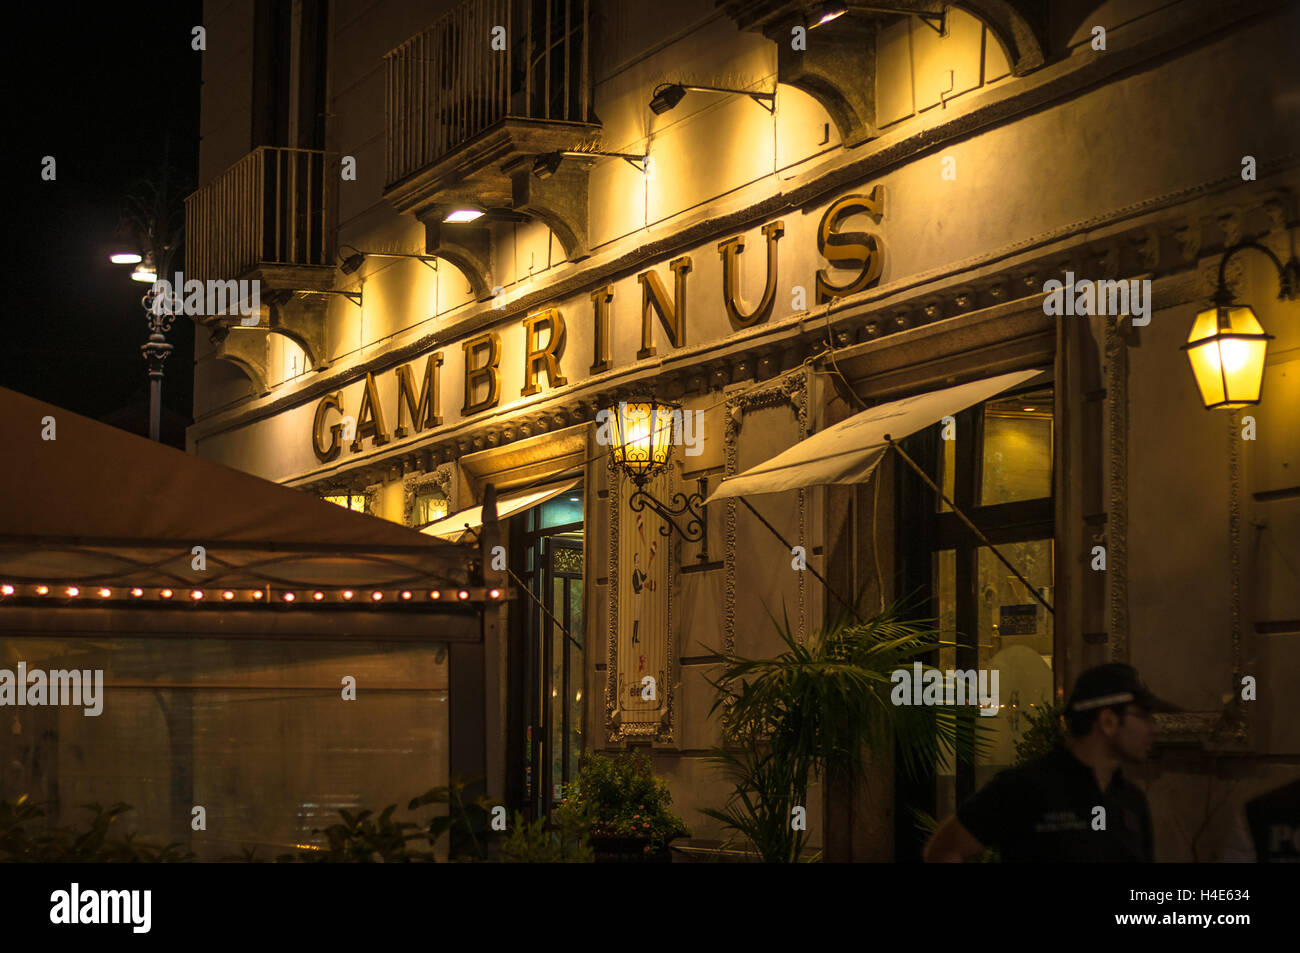 La fachada de Caffe Gambrinus durante la noche. Caffe Gambrinus es un café napolitano se remonta a 1860. Foto de stock